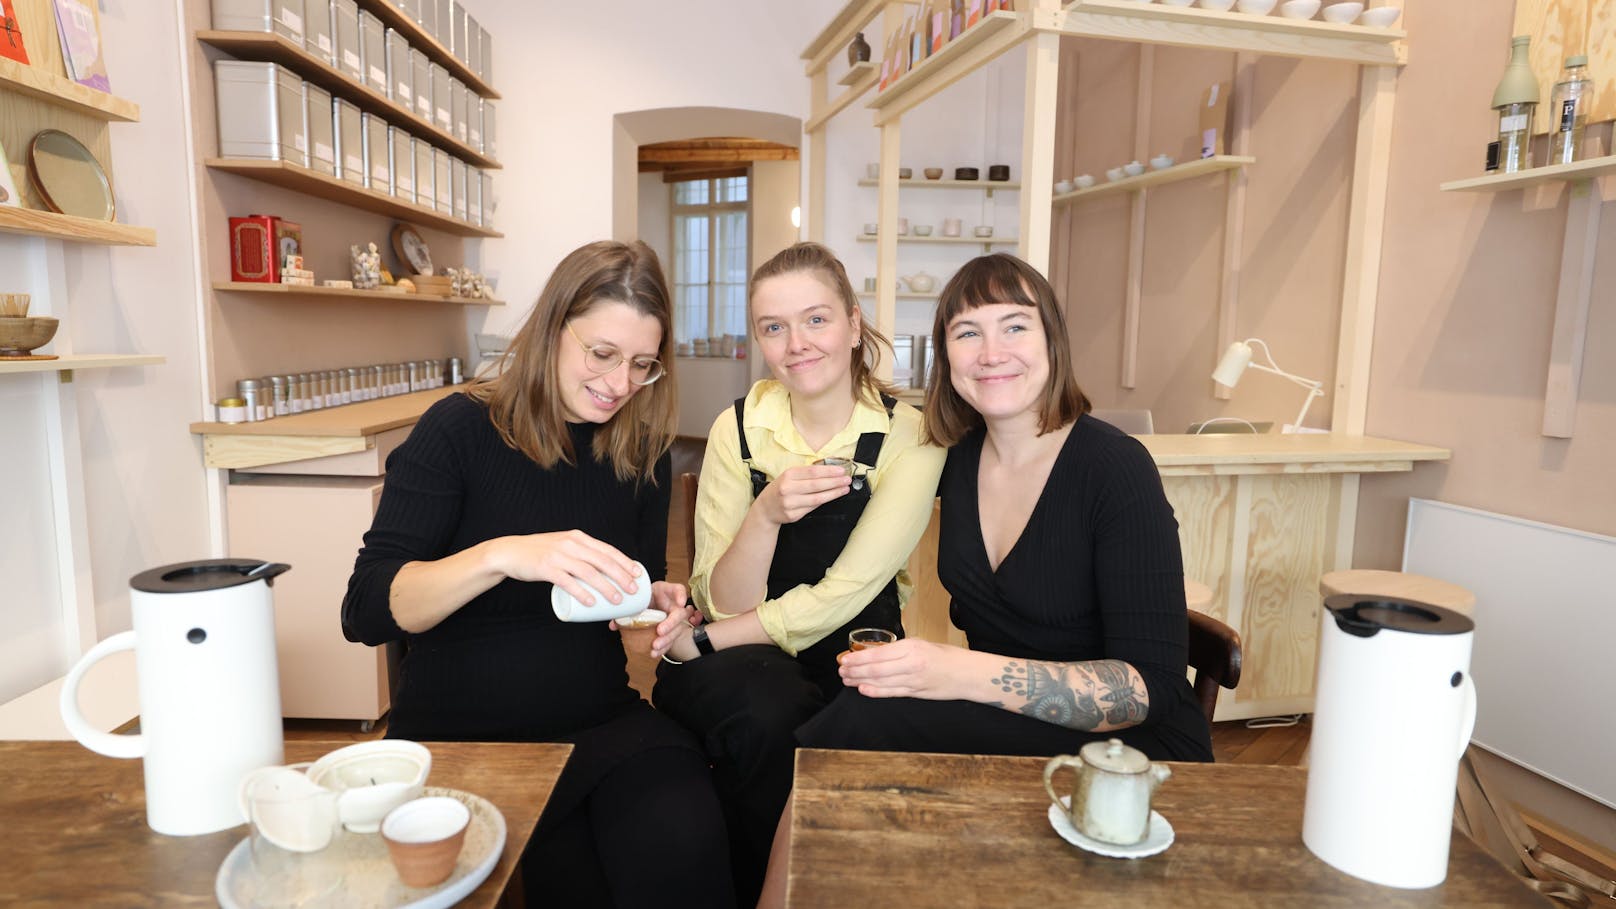 Teresa Dolezal (34) aus Wien, Kate Dudelka-Thompson (32) aus England und Anouk Siedler (33) aus Luxembourg (v.l.) kennen sich vom Studium und kamen "ganz natürlich" von der Keramikwerkstatt zum Tee.